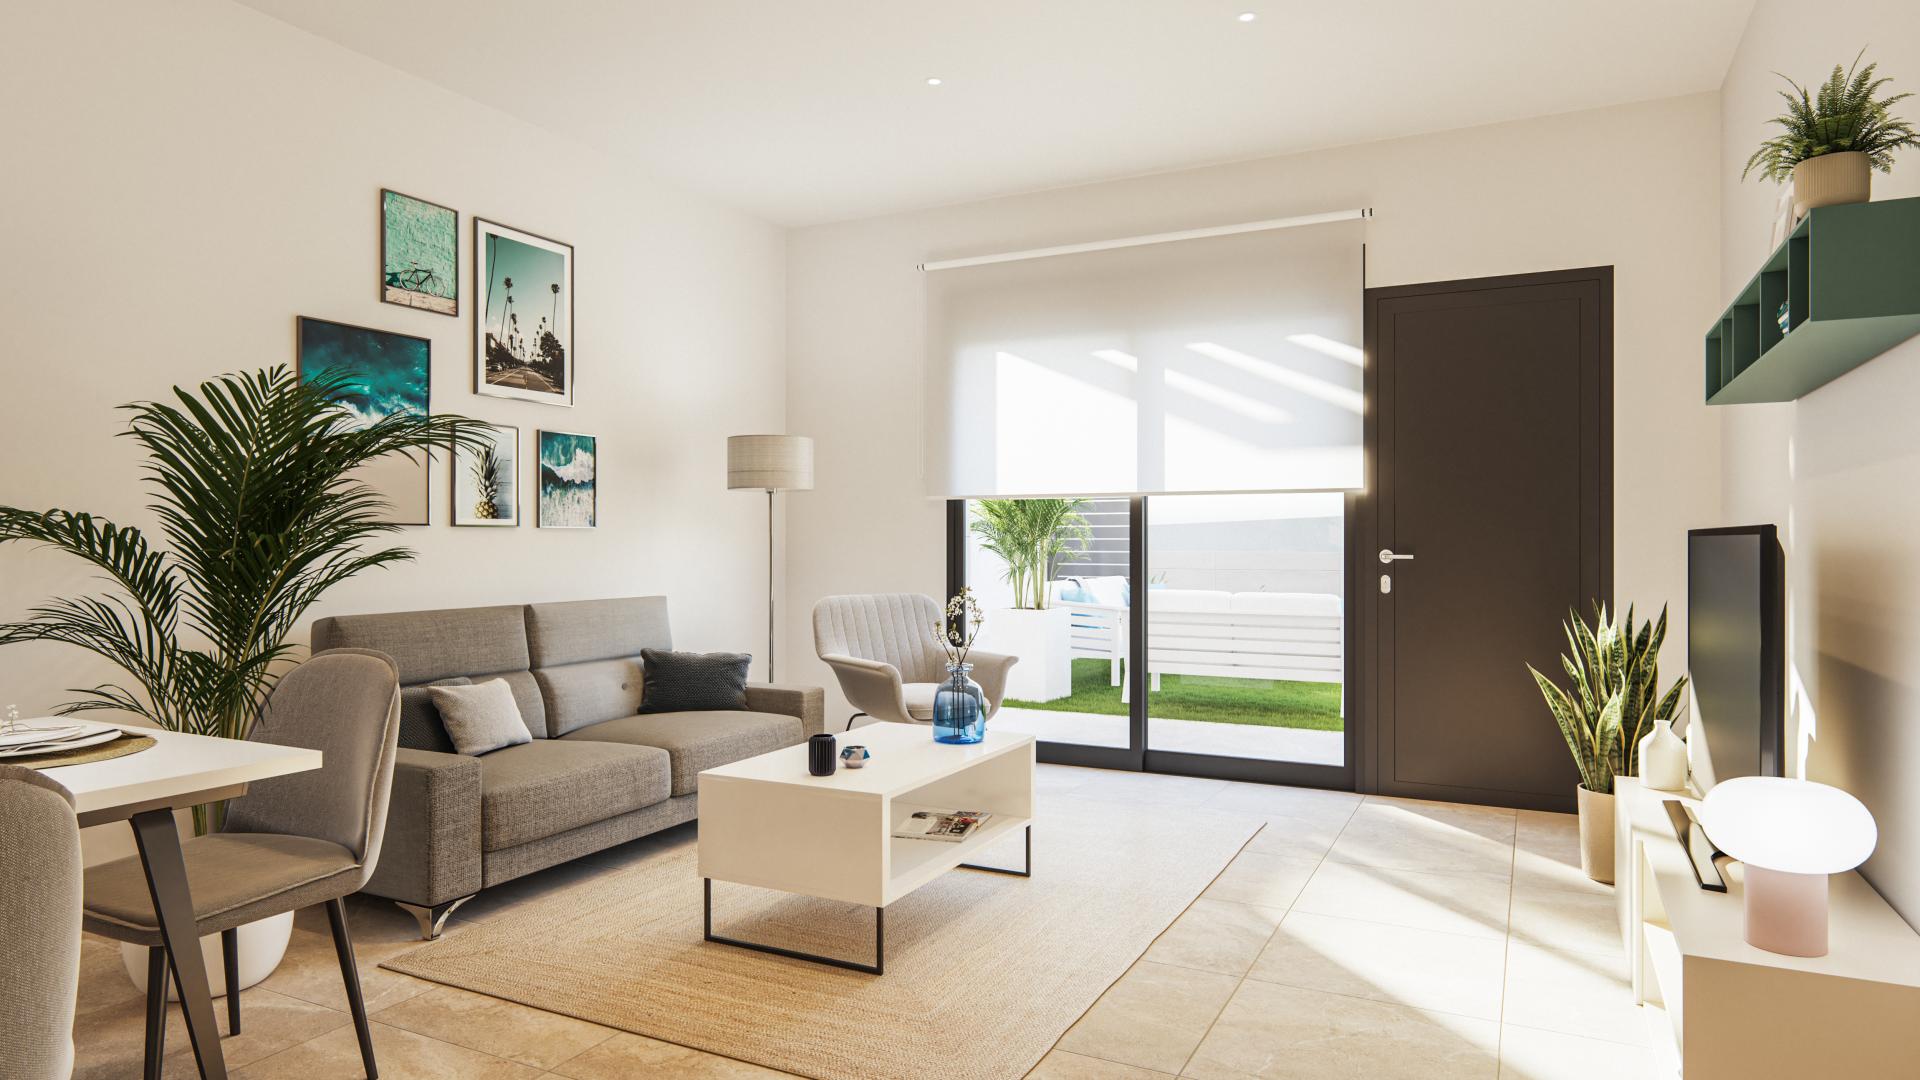 3 slaapkamer Appartement met terras in Aguilas - Nieuwbouw in Medvilla Spanje